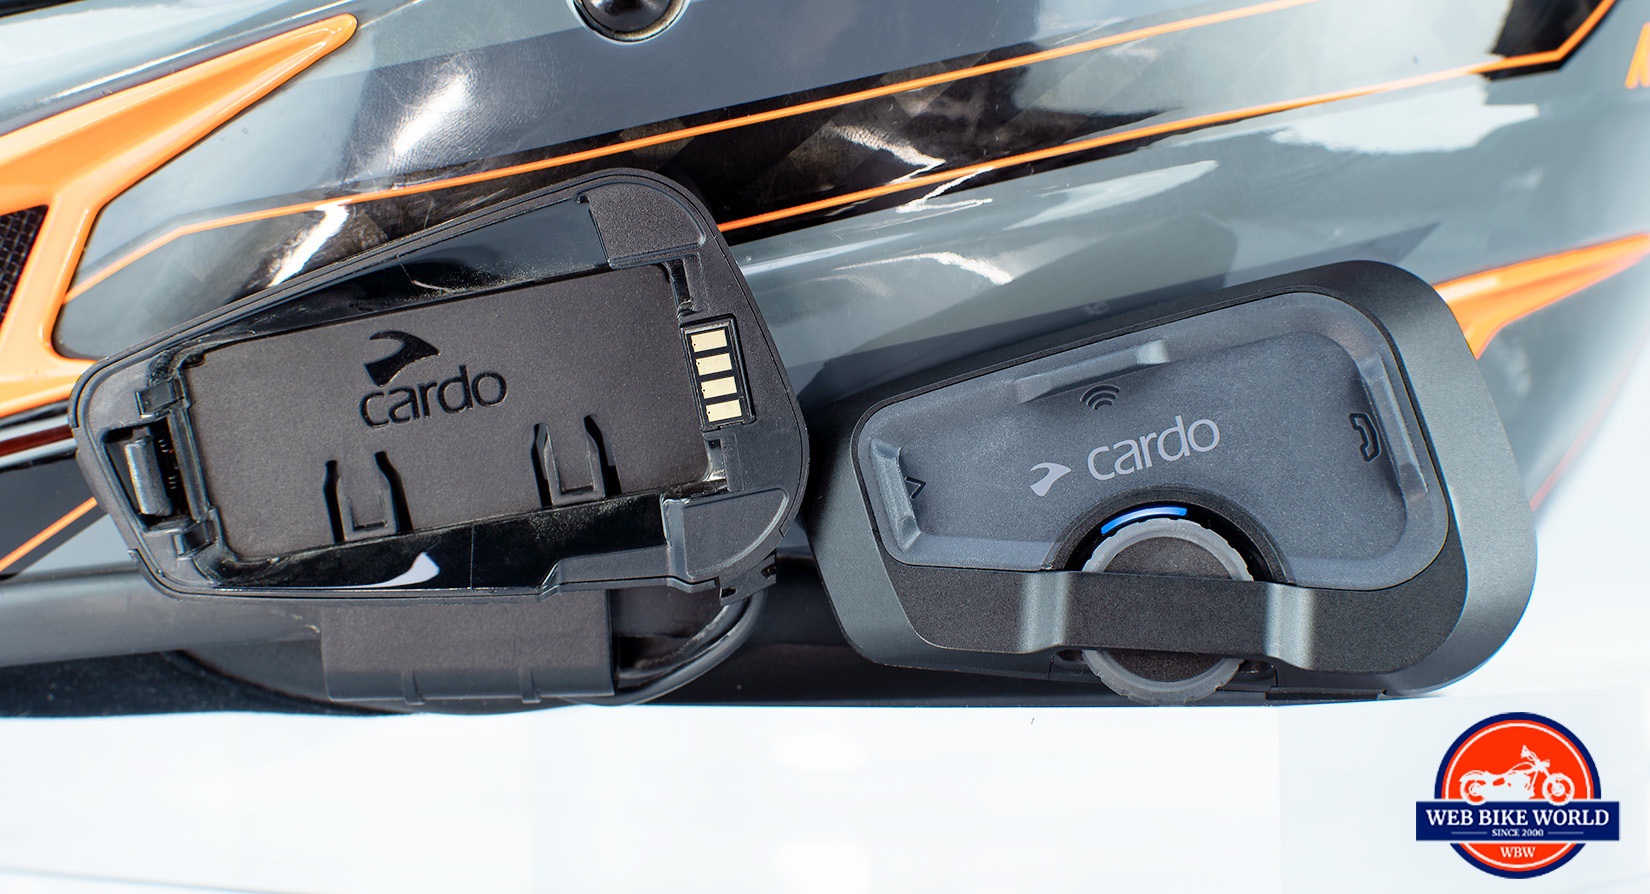 Cardo Freecom 4X Communicator In-Helmet Review